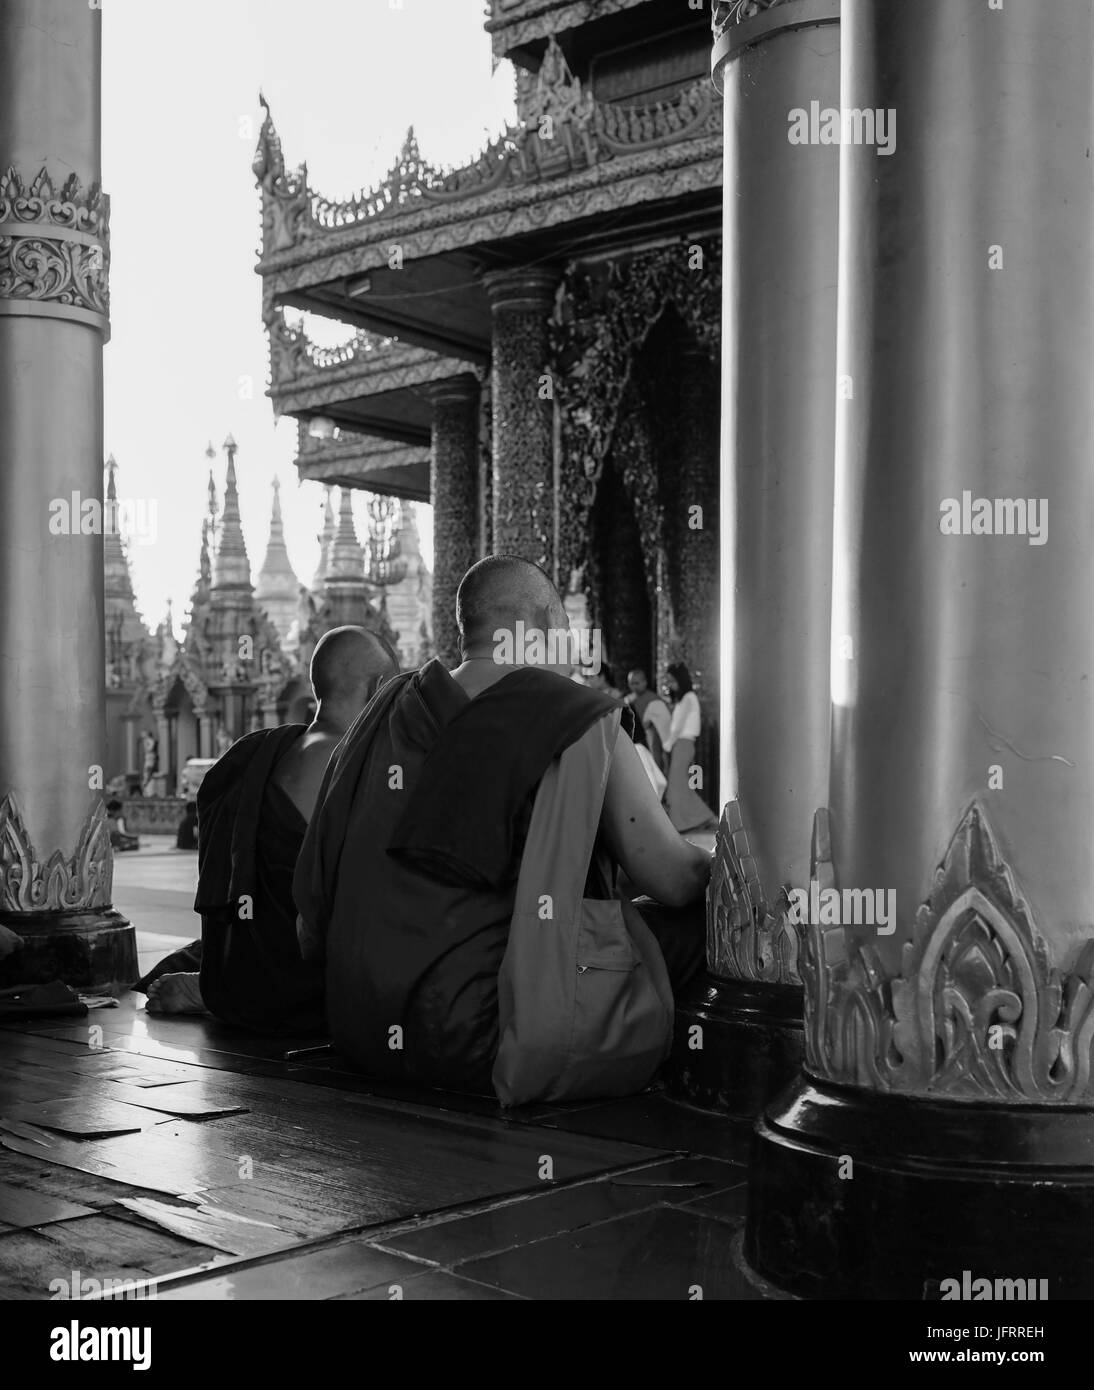 Yangon, Myanmar - Oct 16, 2015. Des moines bouddhistes à la pagode Shwedagon à Yangon, Myanmar. Pagode Shwedagon pagoda est la plus célèbre dans le monde entier et a voir Banque D'Images